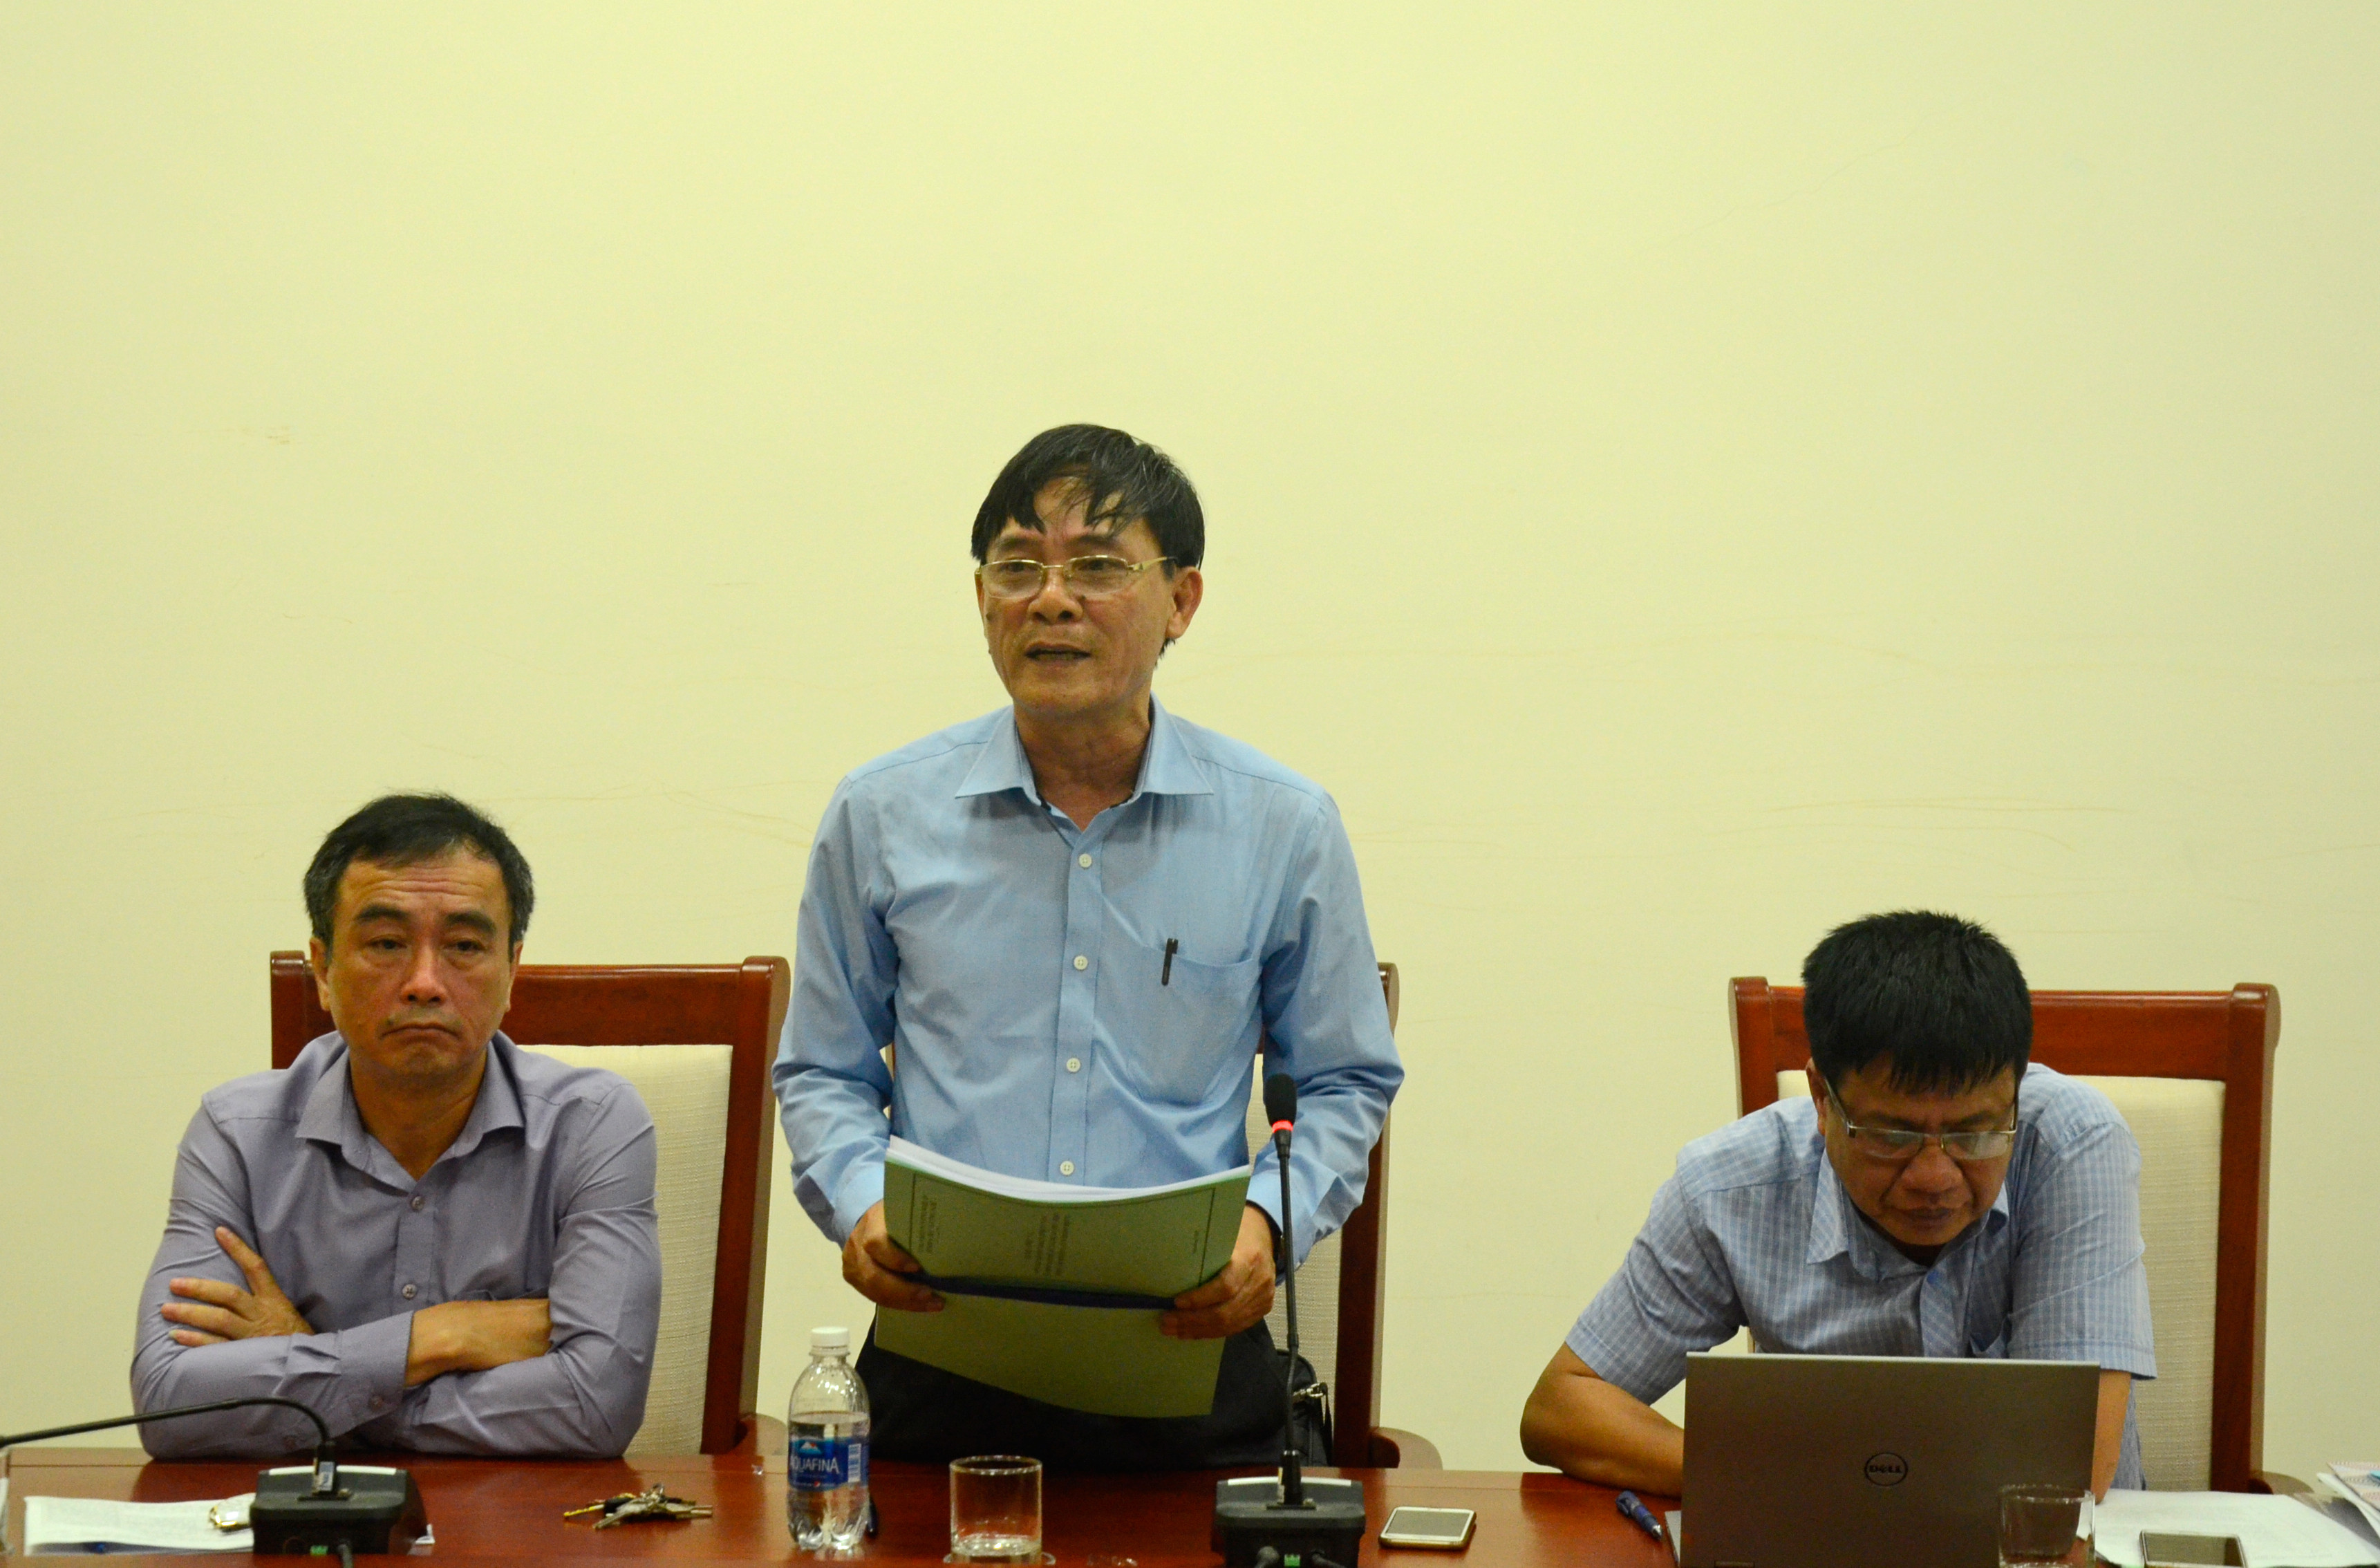 Đồng chí Trần Quốc Thành - Giám đốc Sở KH&CN thông qua danh mục đề tài, dự án KH&CN đưa vào thực hiện đợt 2 năm 2018, đợt 1 năm 2019. Ảnh Thanh Lê